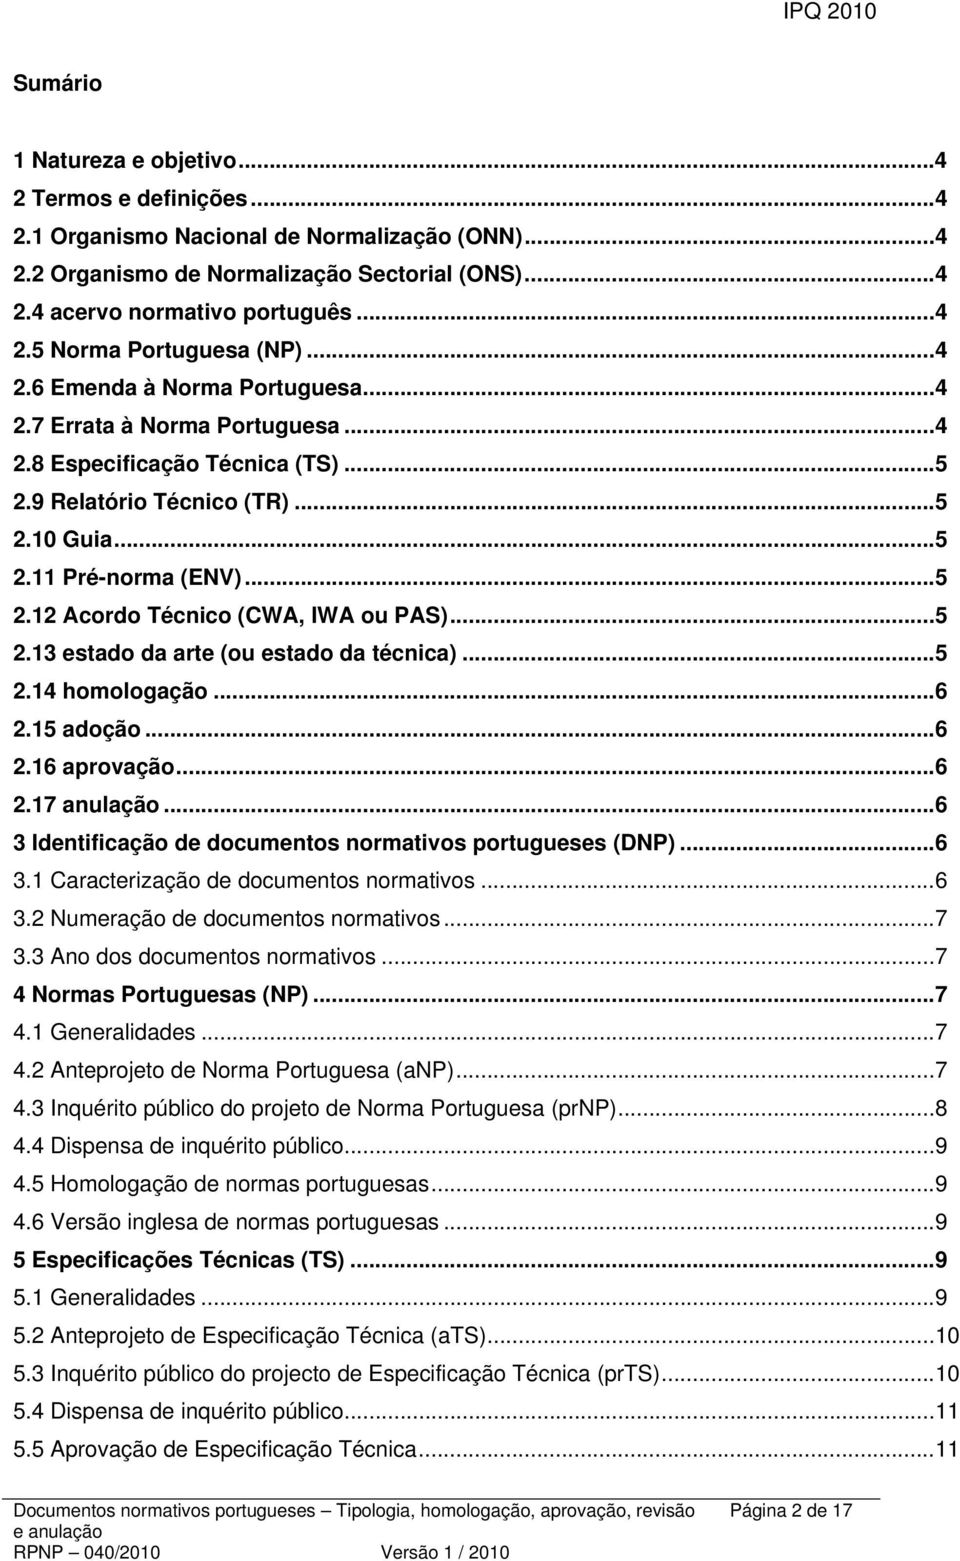 .. 5 2.13 estado da arte (ou estado da técnica)... 5 2.14 homologação... 6 2.15 adoção... 6 2.16 aprovação... 6 2.17 anulação... 6 3 Identificação de documentos normativos portugueses (DNP)... 6 3.1 Caracterização de documentos normativos.